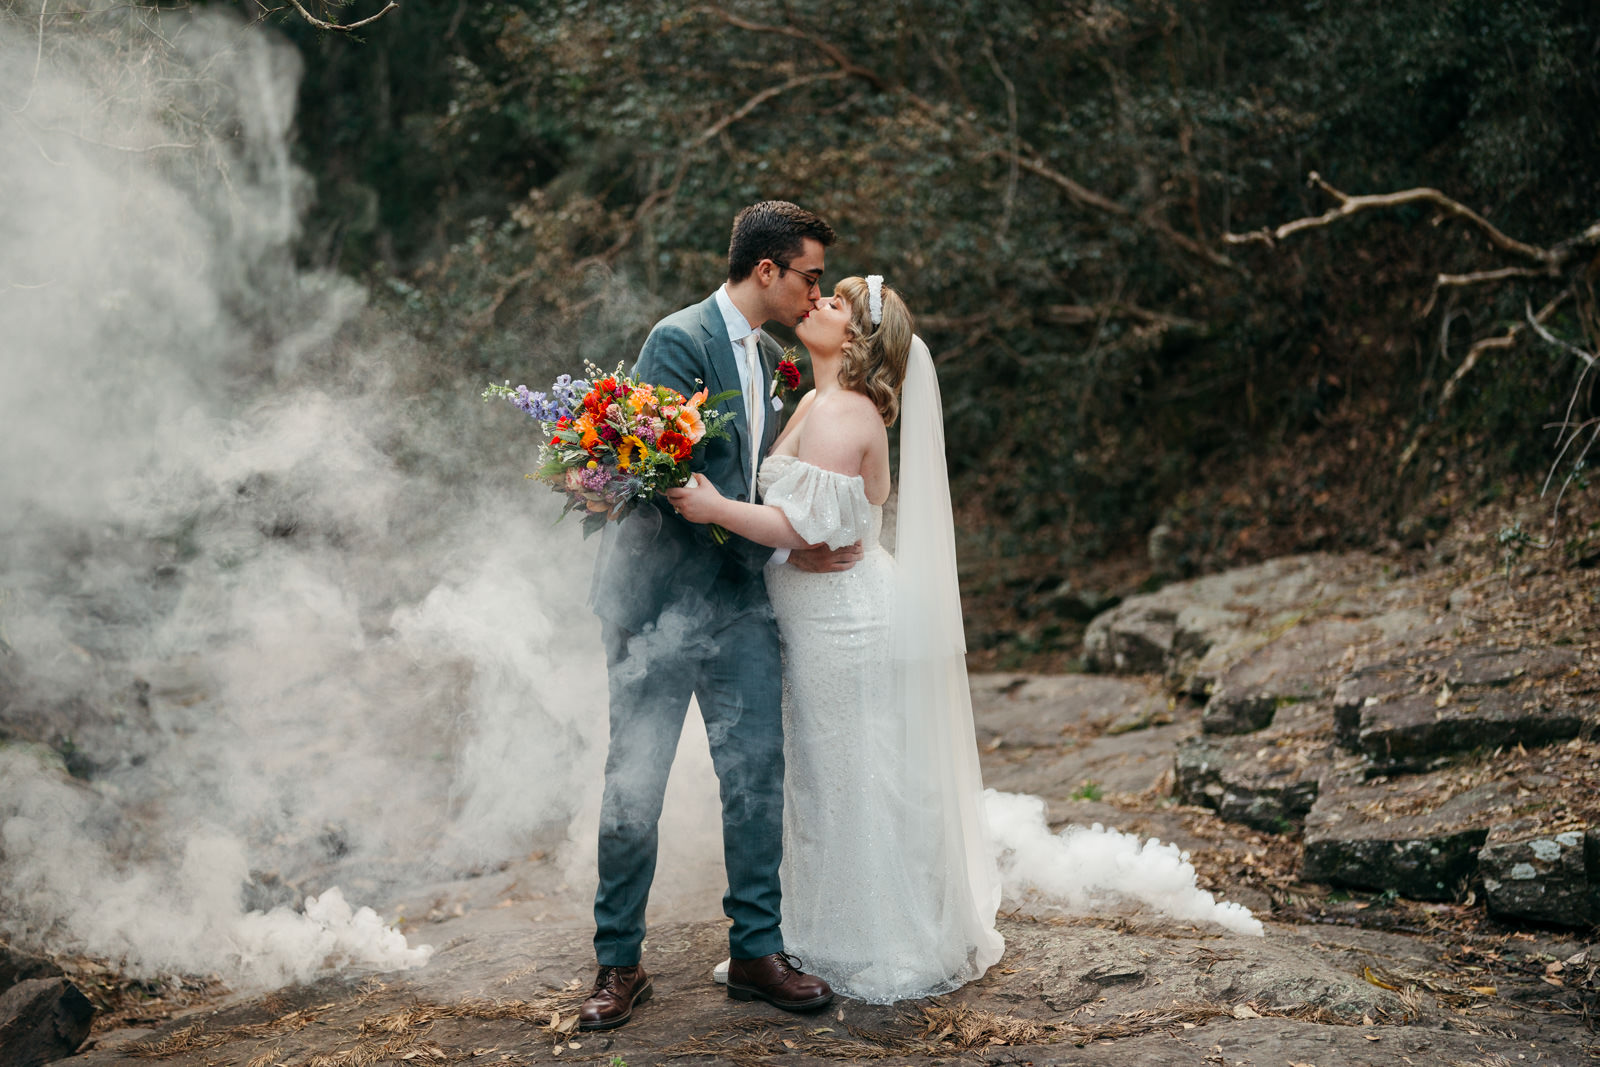 Smoke bomb used at micro wedding in a bush setting